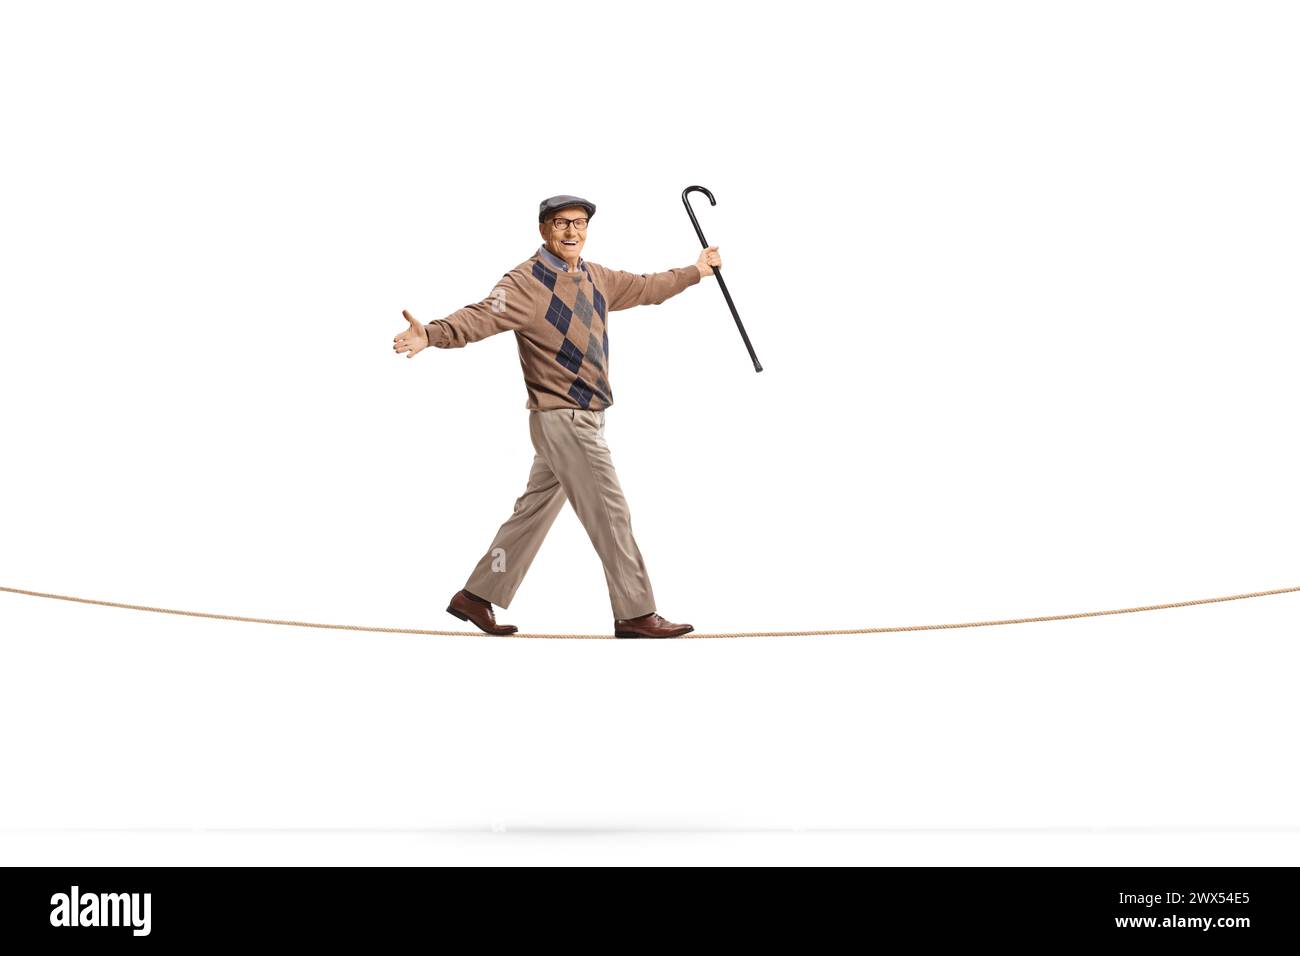 Plan complet d'un homme âgé tenant une canne et marchant sur une corde isolé sur fond blanc Banque D'Images